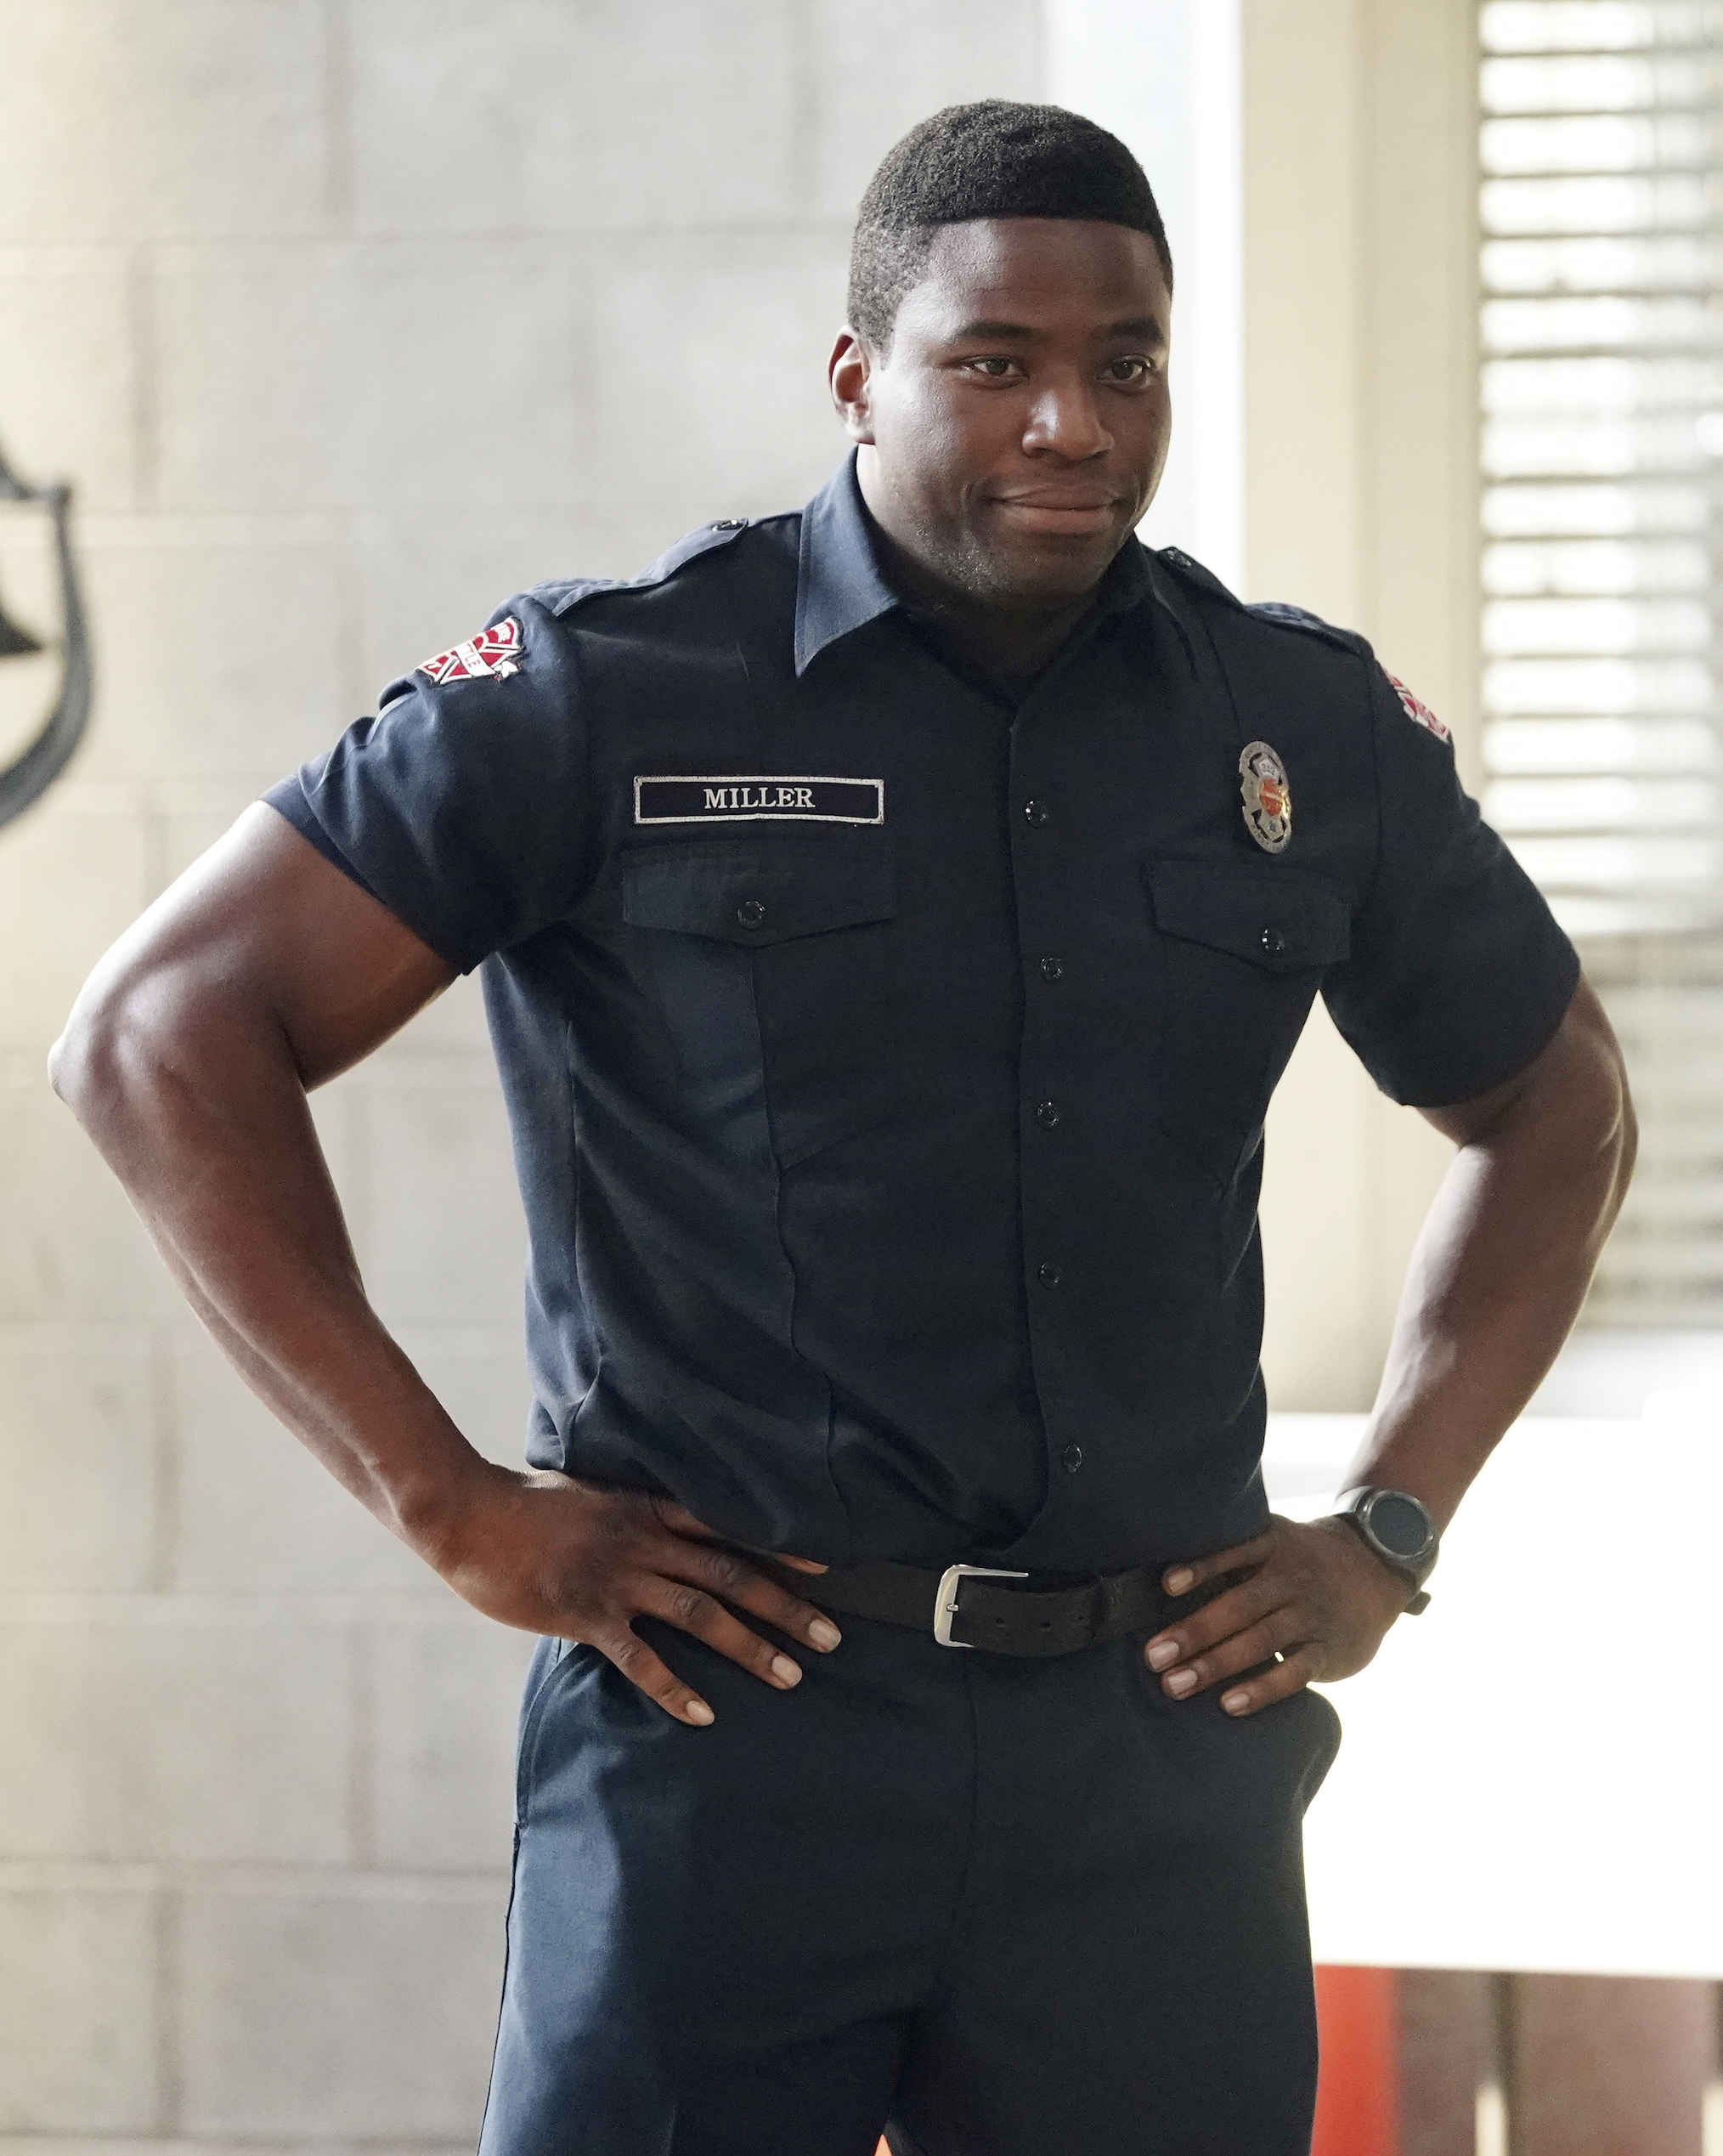 Okieriete Onaodowan as Dean Miller in Station 19